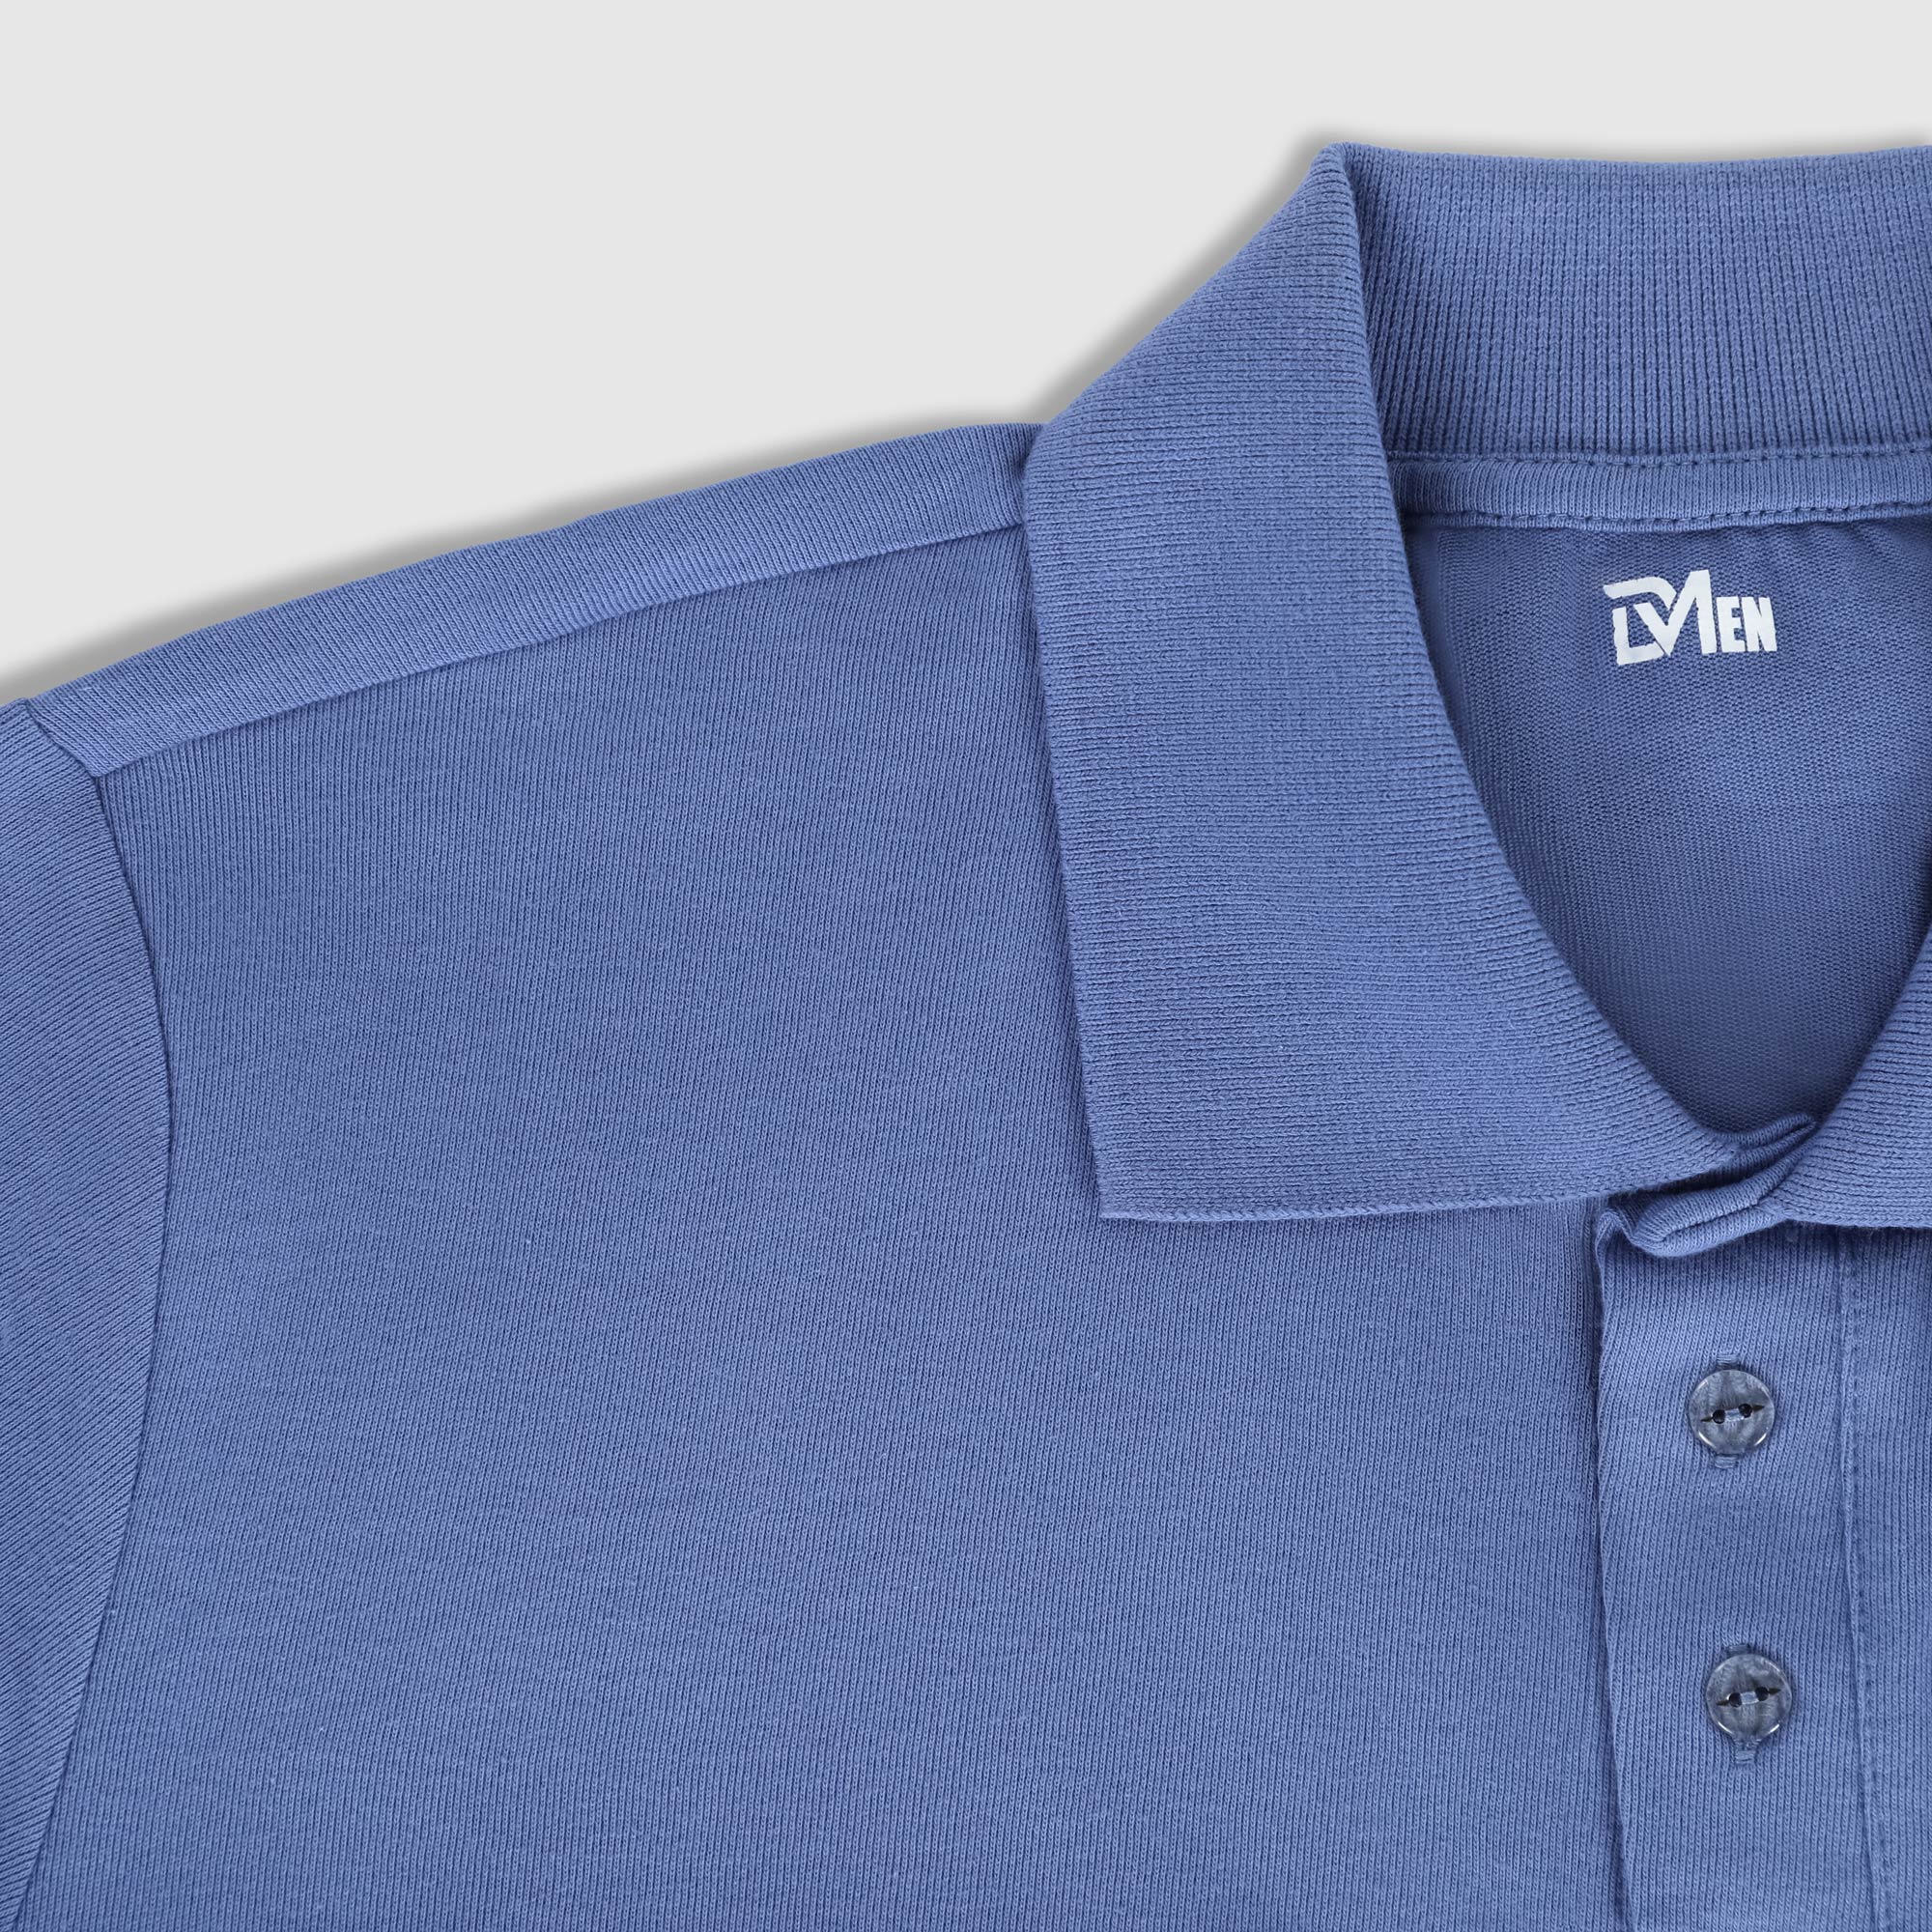 Рубашка мужская Diva Teks поло джинсовая, цвет джинсовый, размер S - фото 3